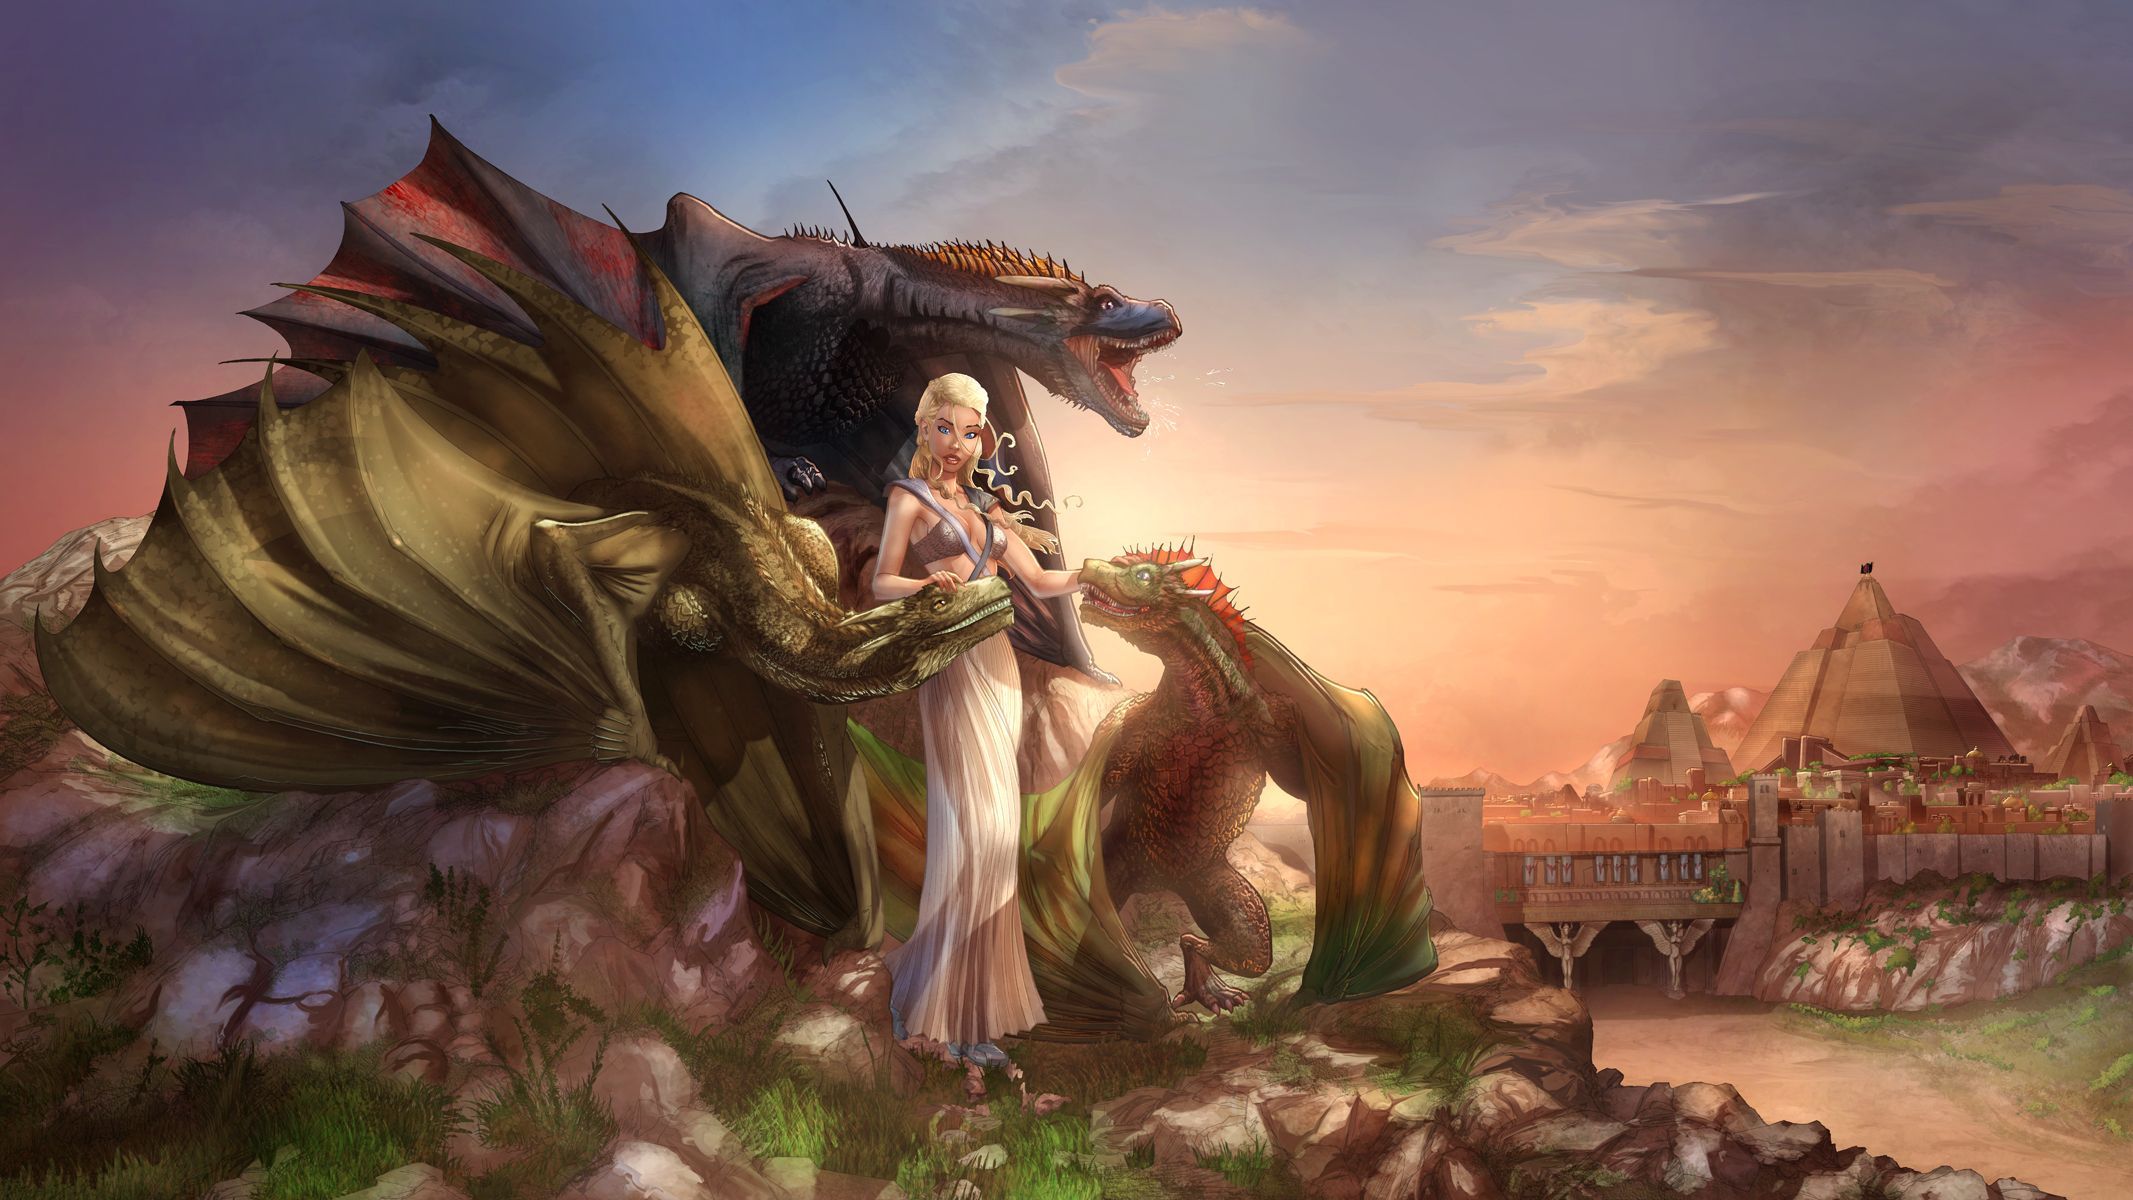 Daenerys Queen Of Meereen Color. Game of thrones, Game of thrones art, Game of thrones dragons